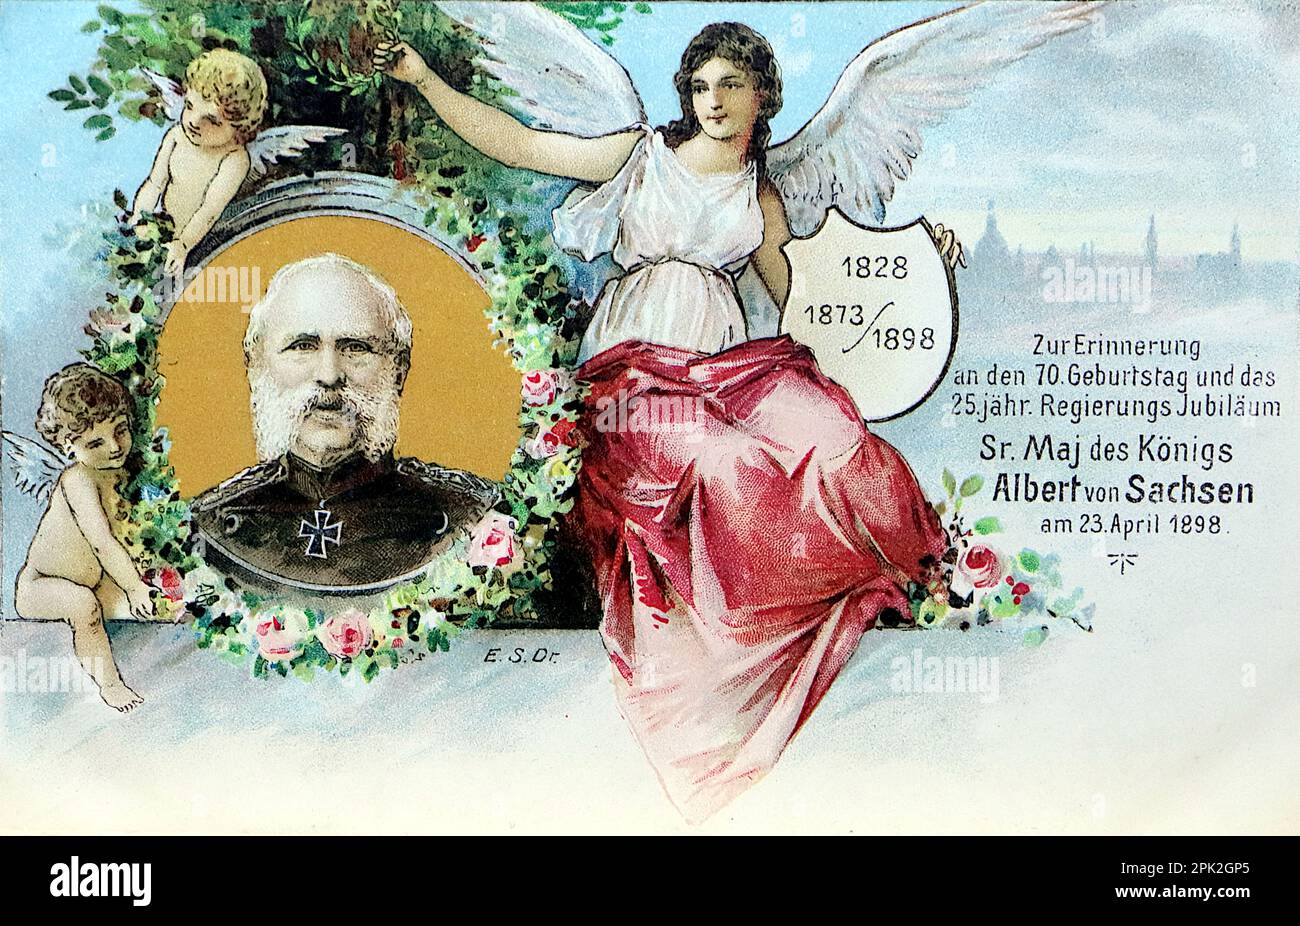 Eine 1898-Postkarte mit Albert von Saschen, König von Sachsen. Diese Karte wurde 1828 geboren und feiert seinen siebzigsten Geburtstag sowie sein Silberjubiläum. Stockfoto